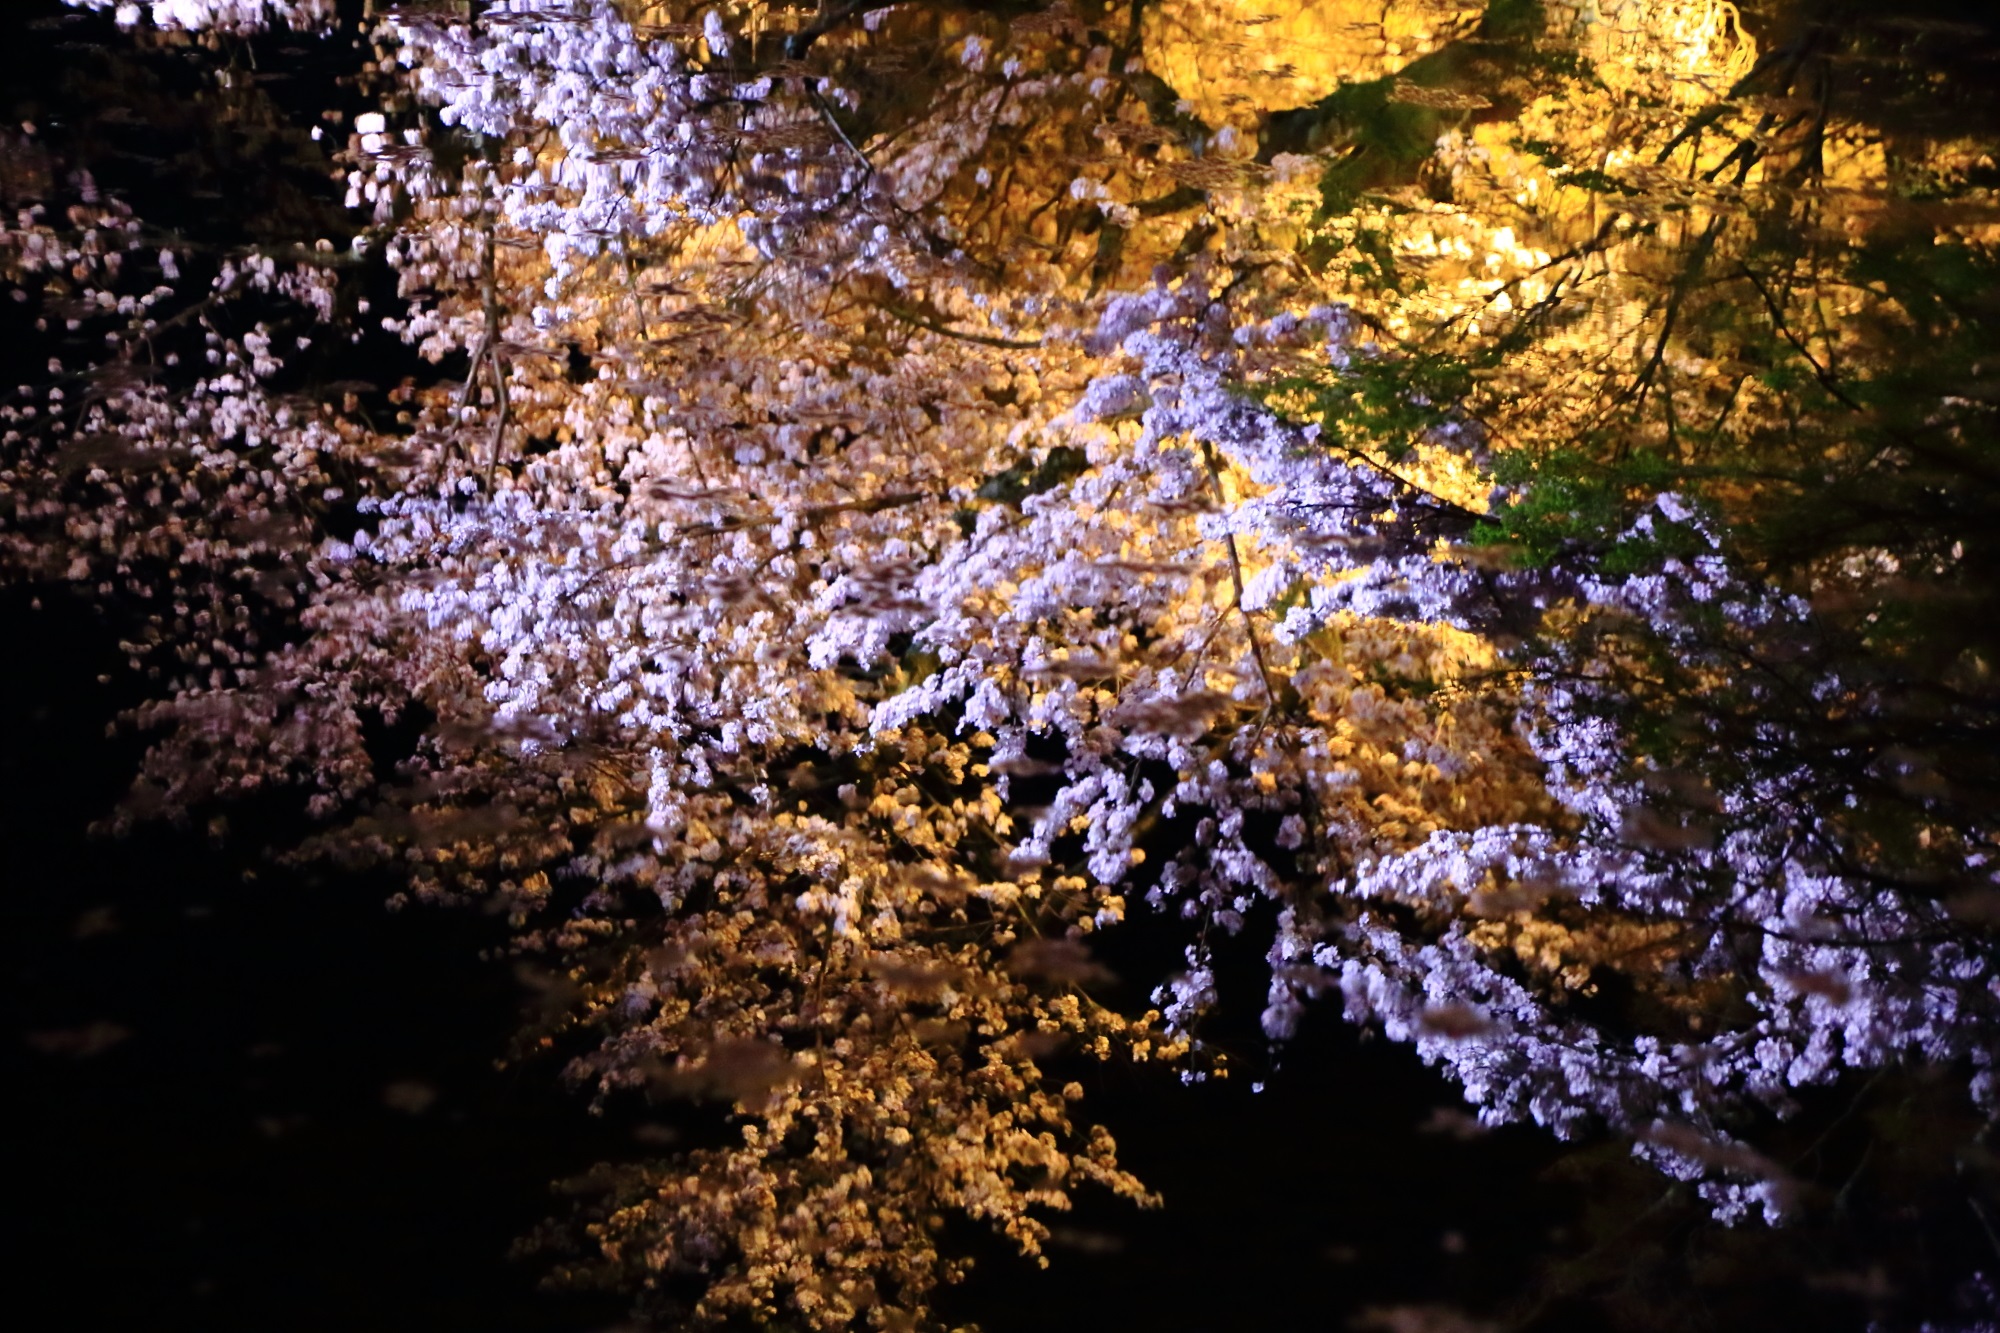 水面に浮かび上がる幻想的で華やかな清水寺の夜桜